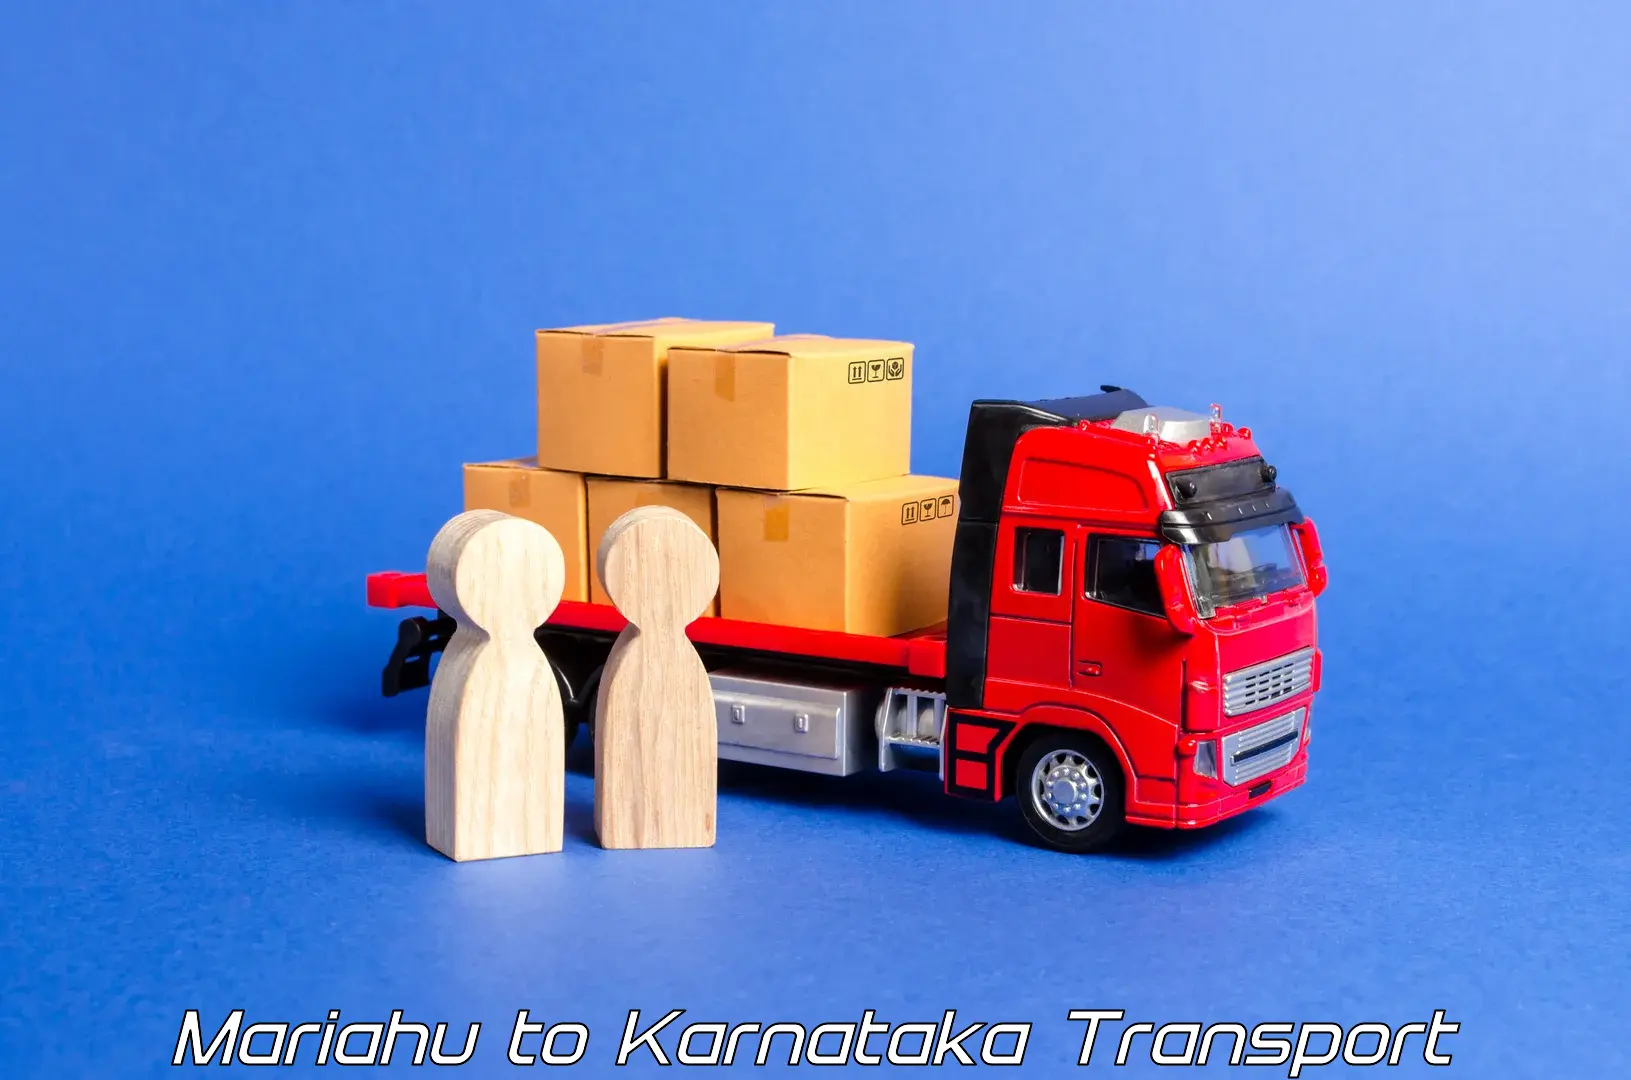 Cargo transportation services in Mariahu to Navalgund